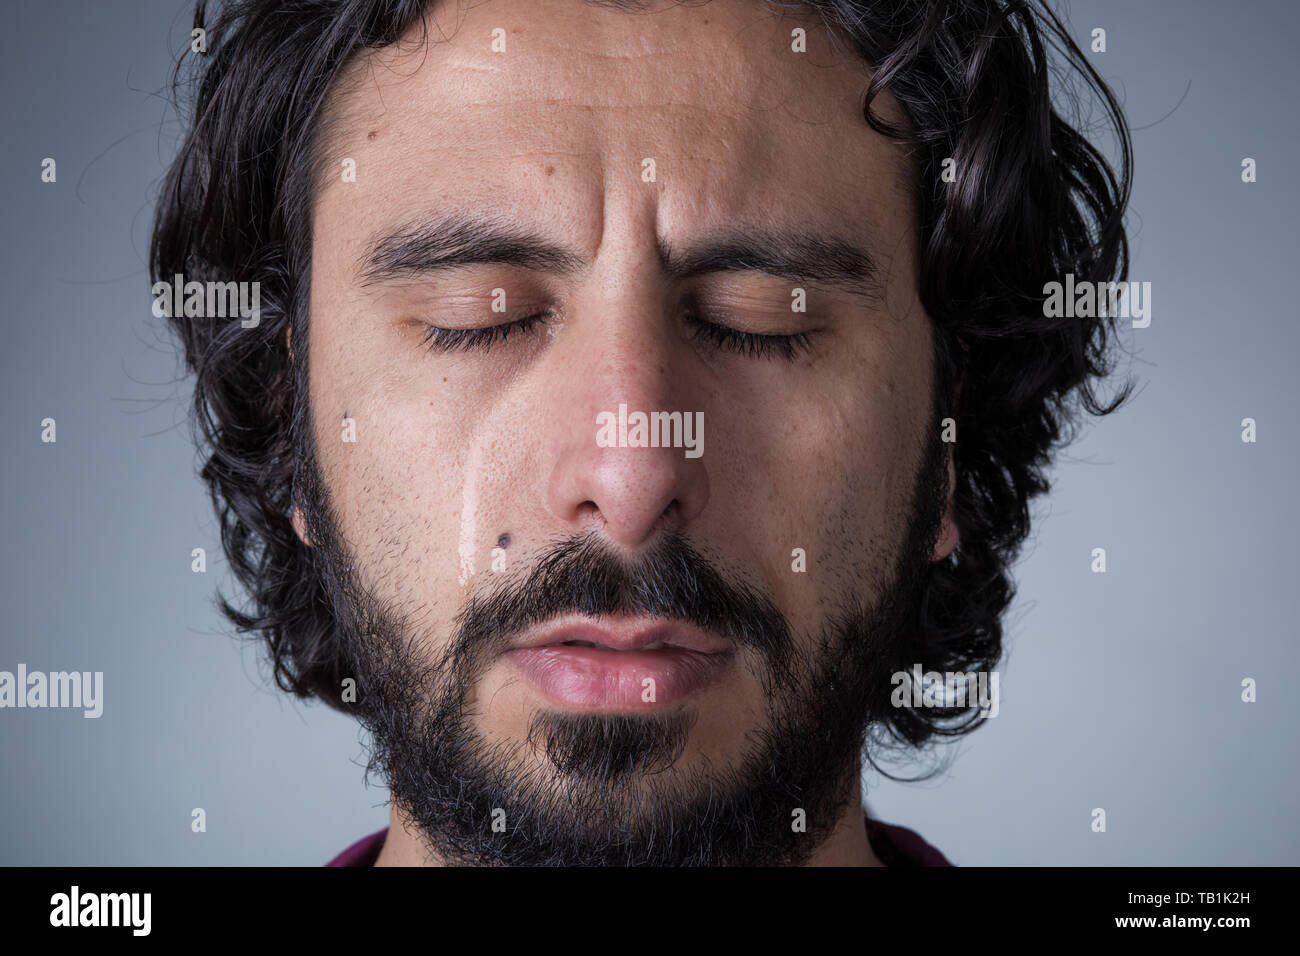 El hombre con la barba y el pelo largo llorando con los ojos cerrados Foto de stock